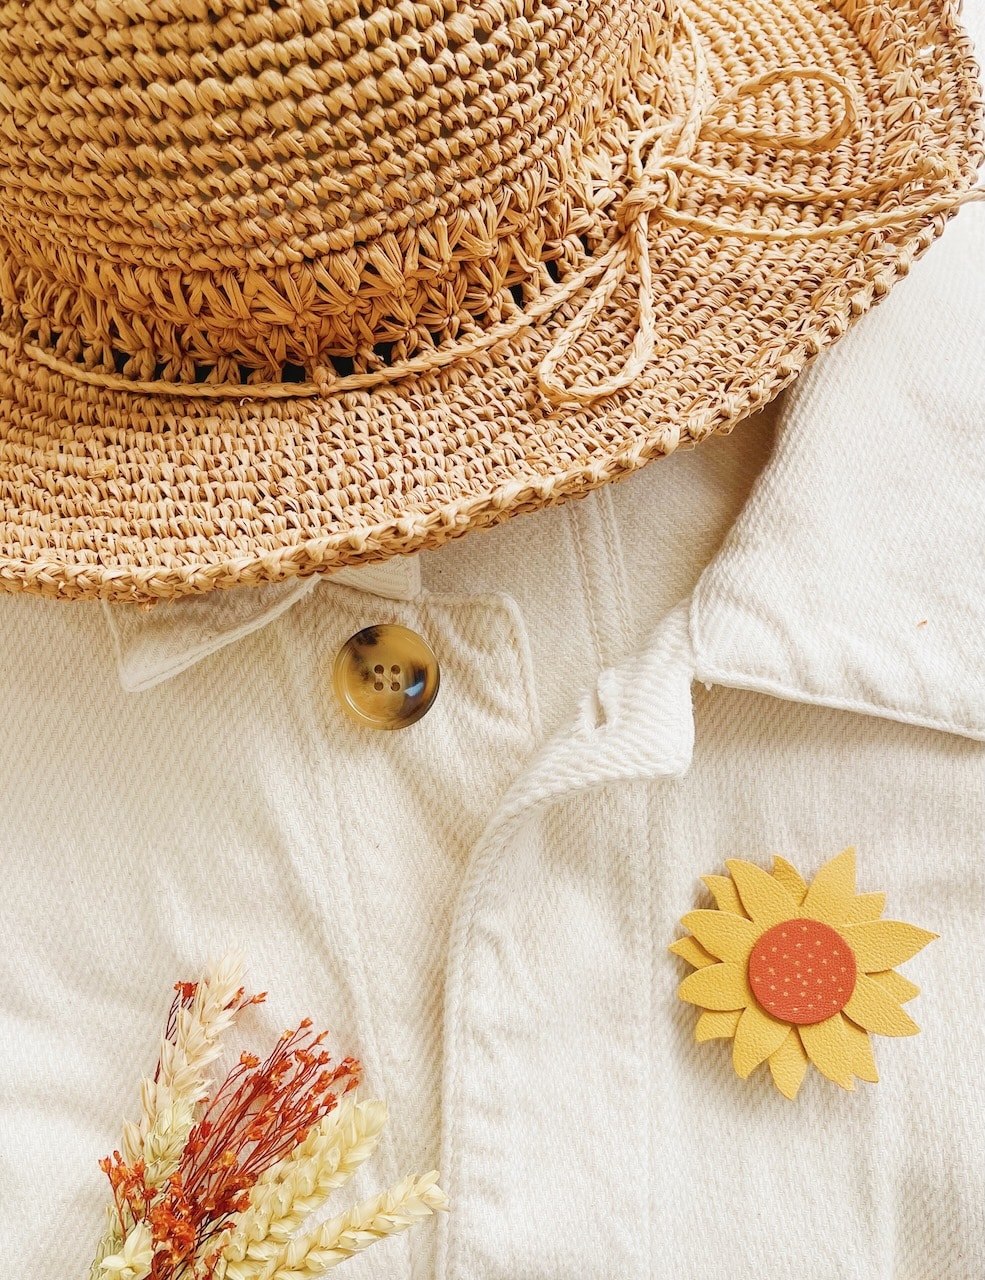 jolie broche tournesol fleur de soleil, une touche bohème chic et champêtre pour les robes et tenues d'été ©duventdansmesvalises 3